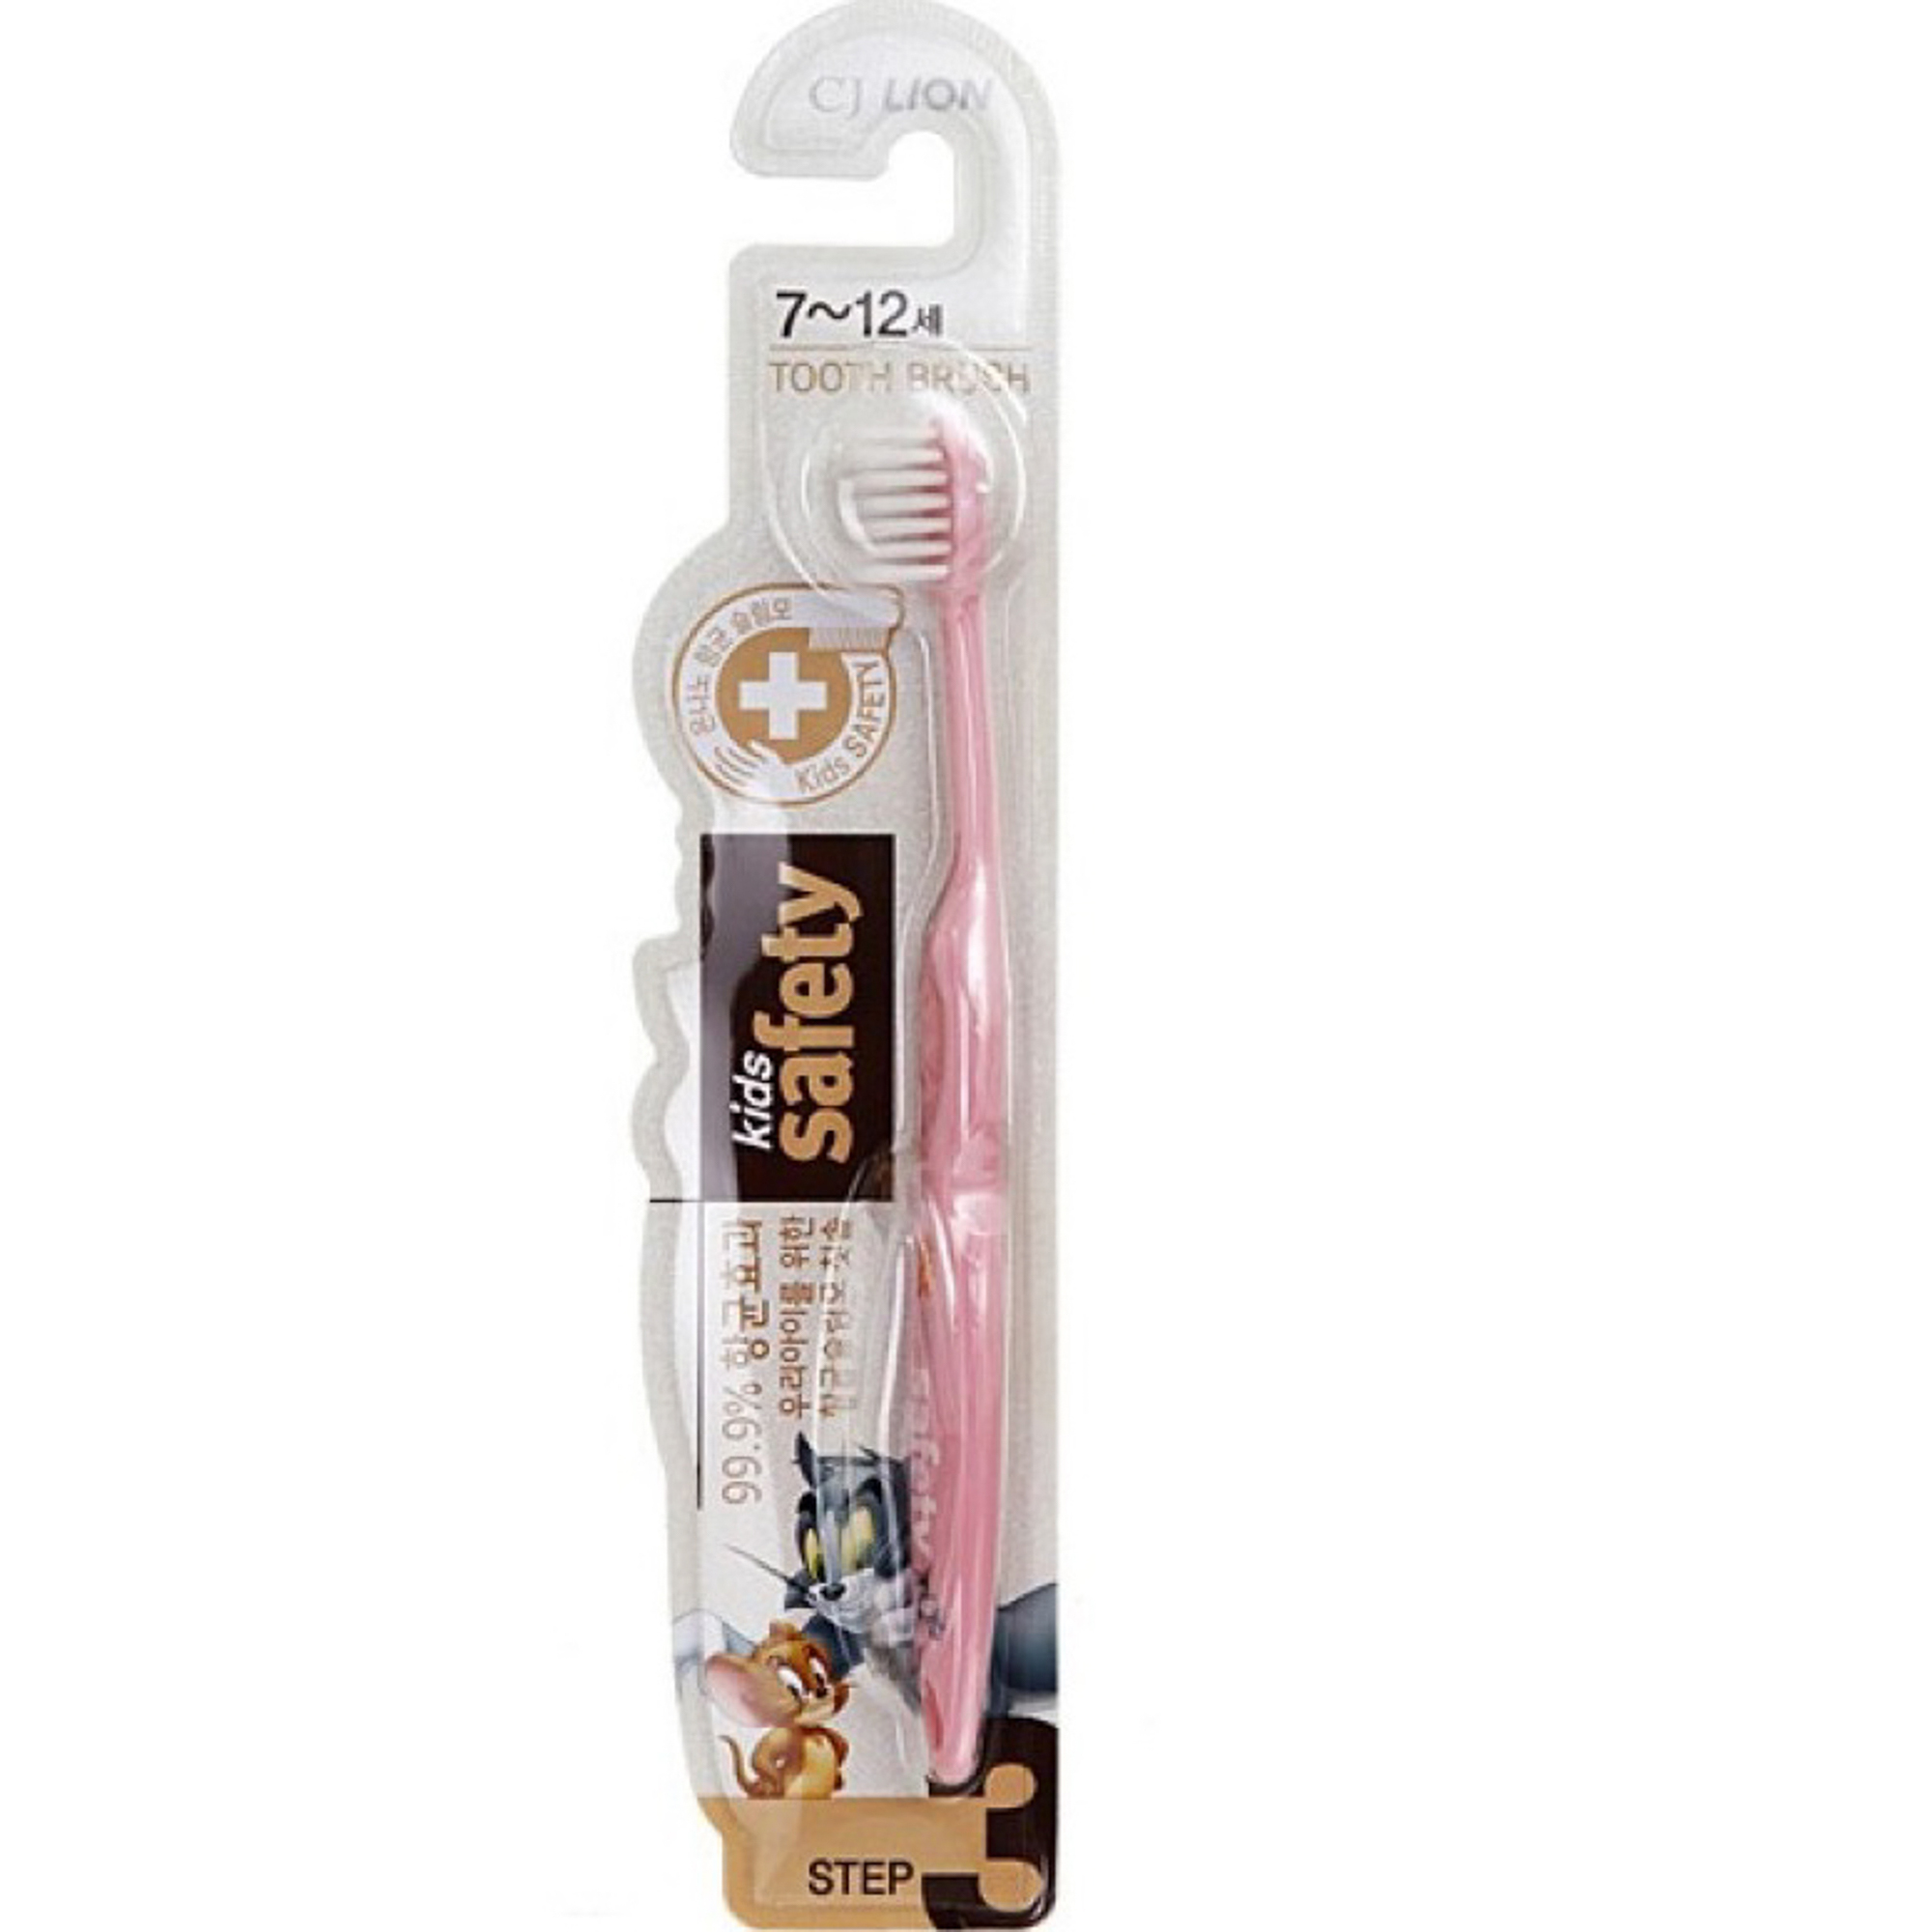 Зубная щетка детская CJ Lion Kids Safe с нано-серебряным покрытием от 7лет зубная щетка lacalut kids 4